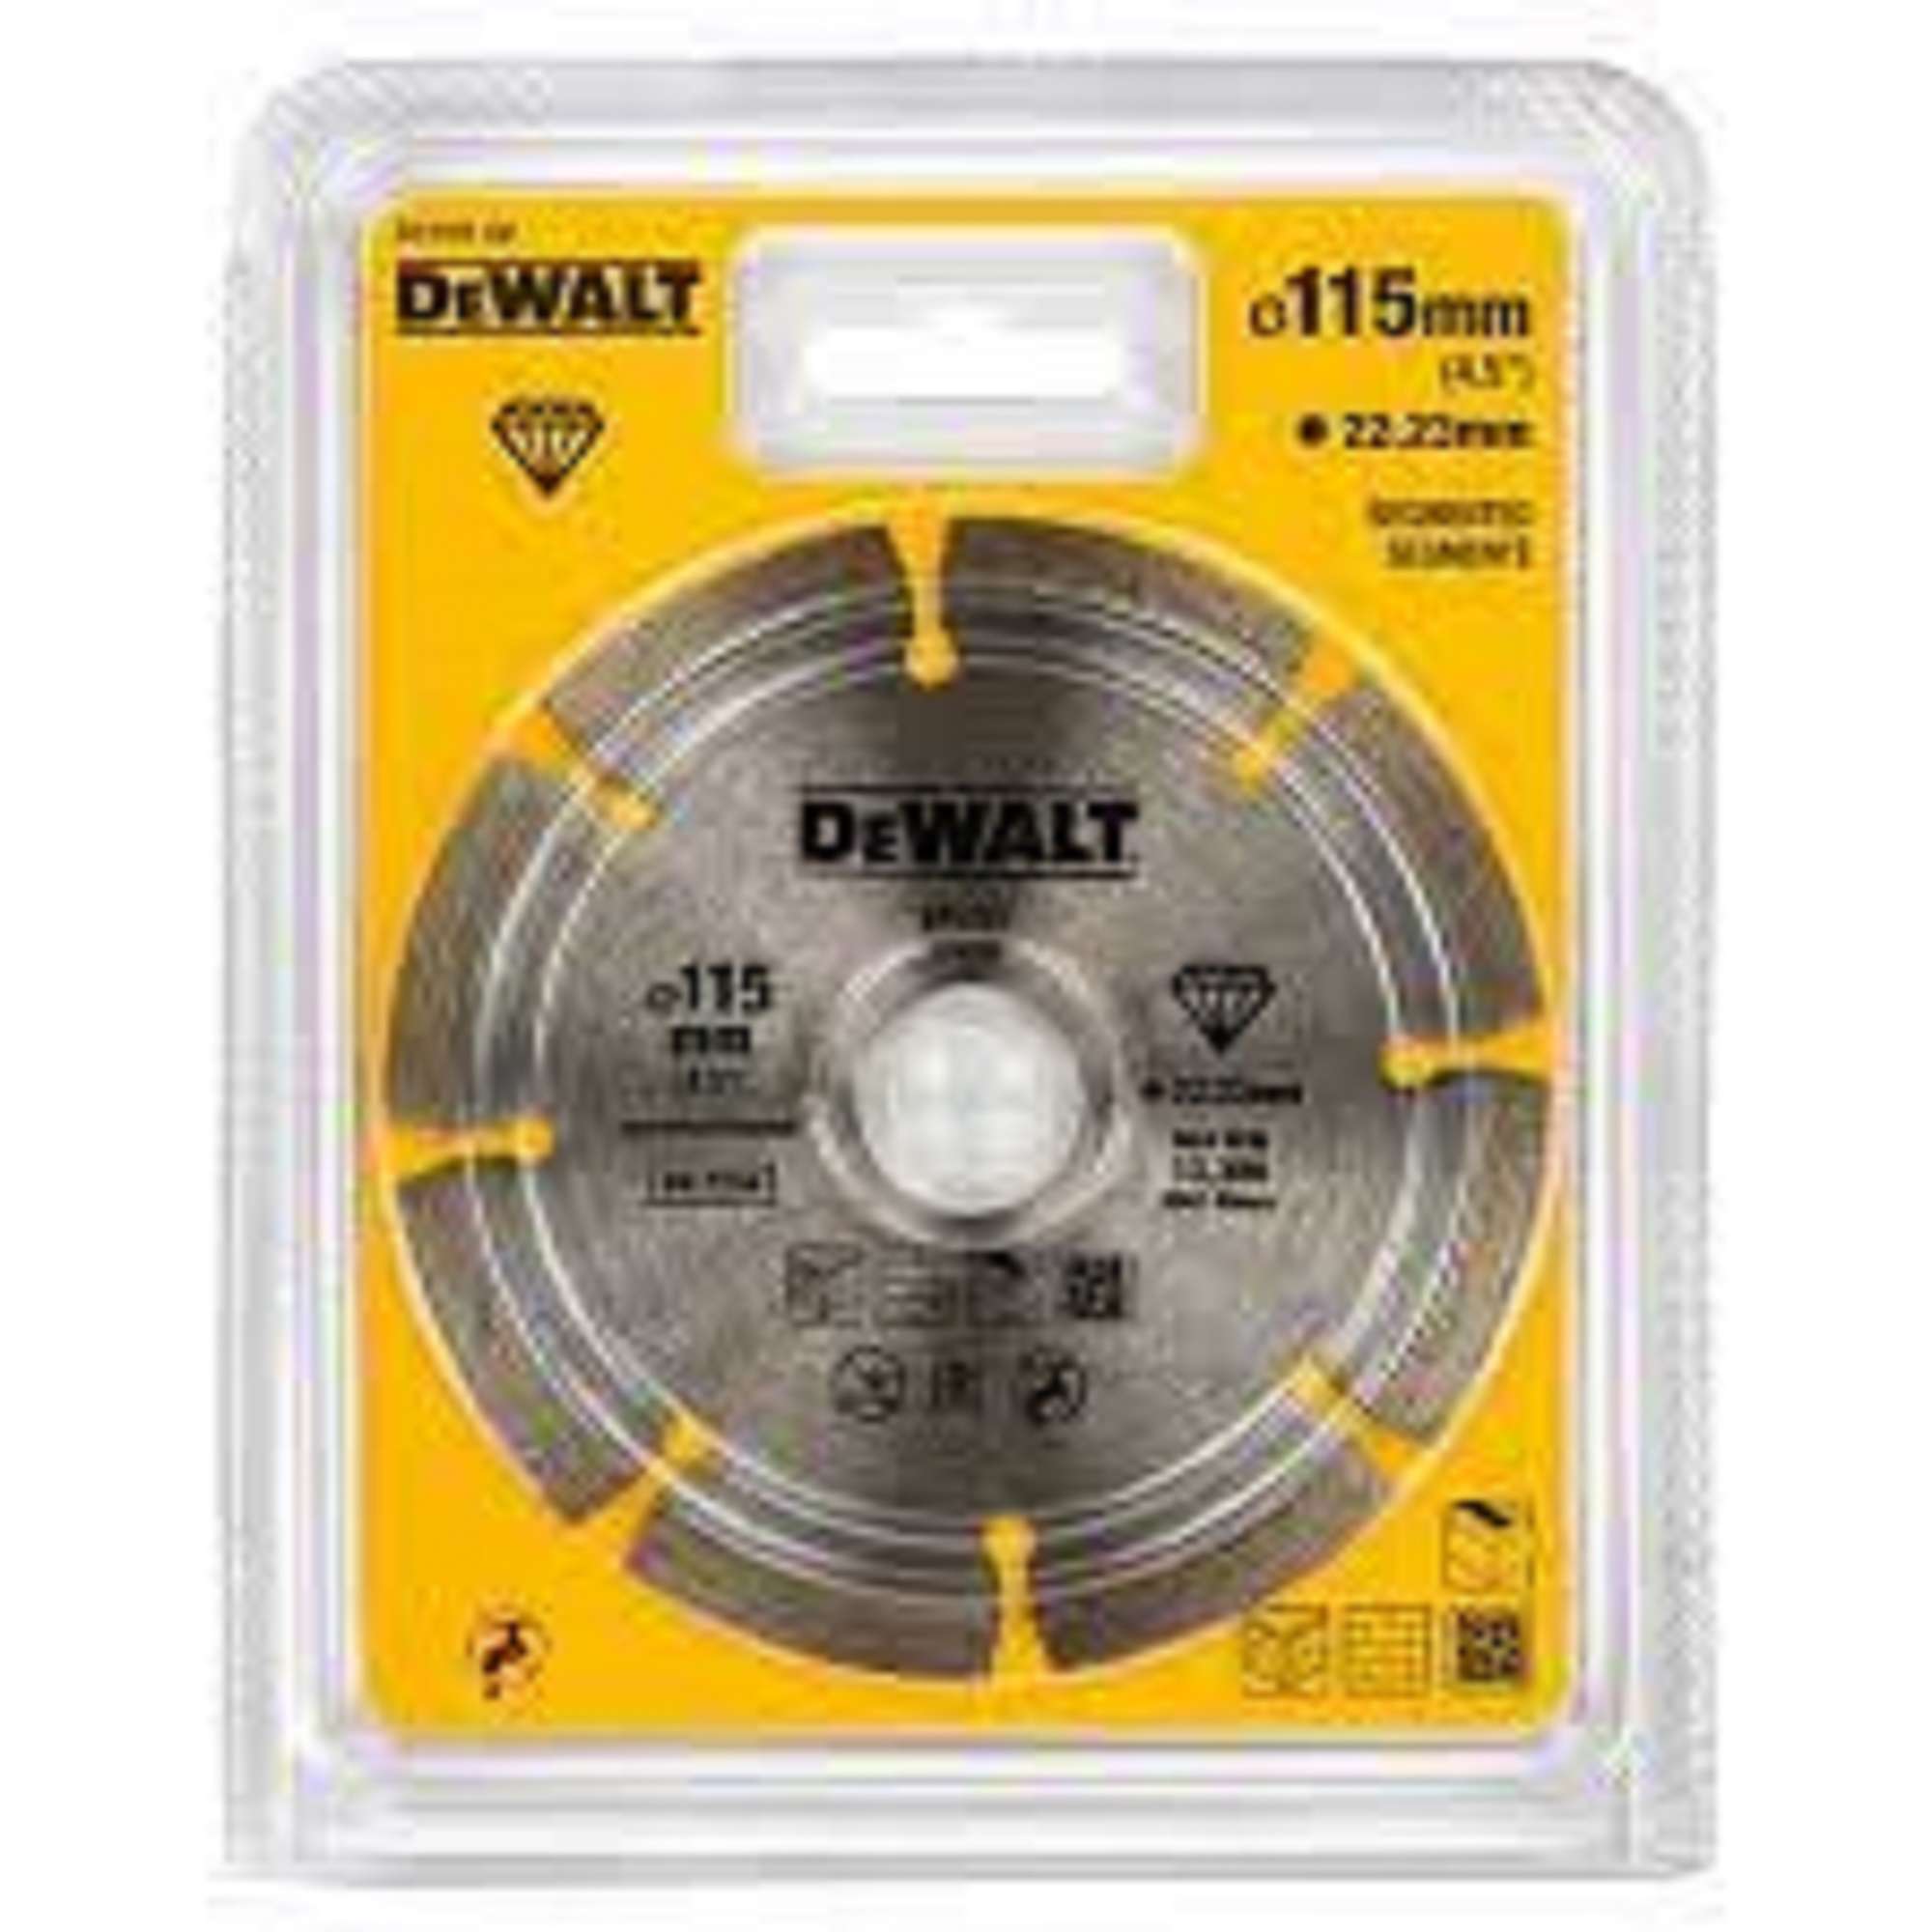 Diamond cutting disc DEWALT DT3701-QZ 115 X 33.2 X 7 MM